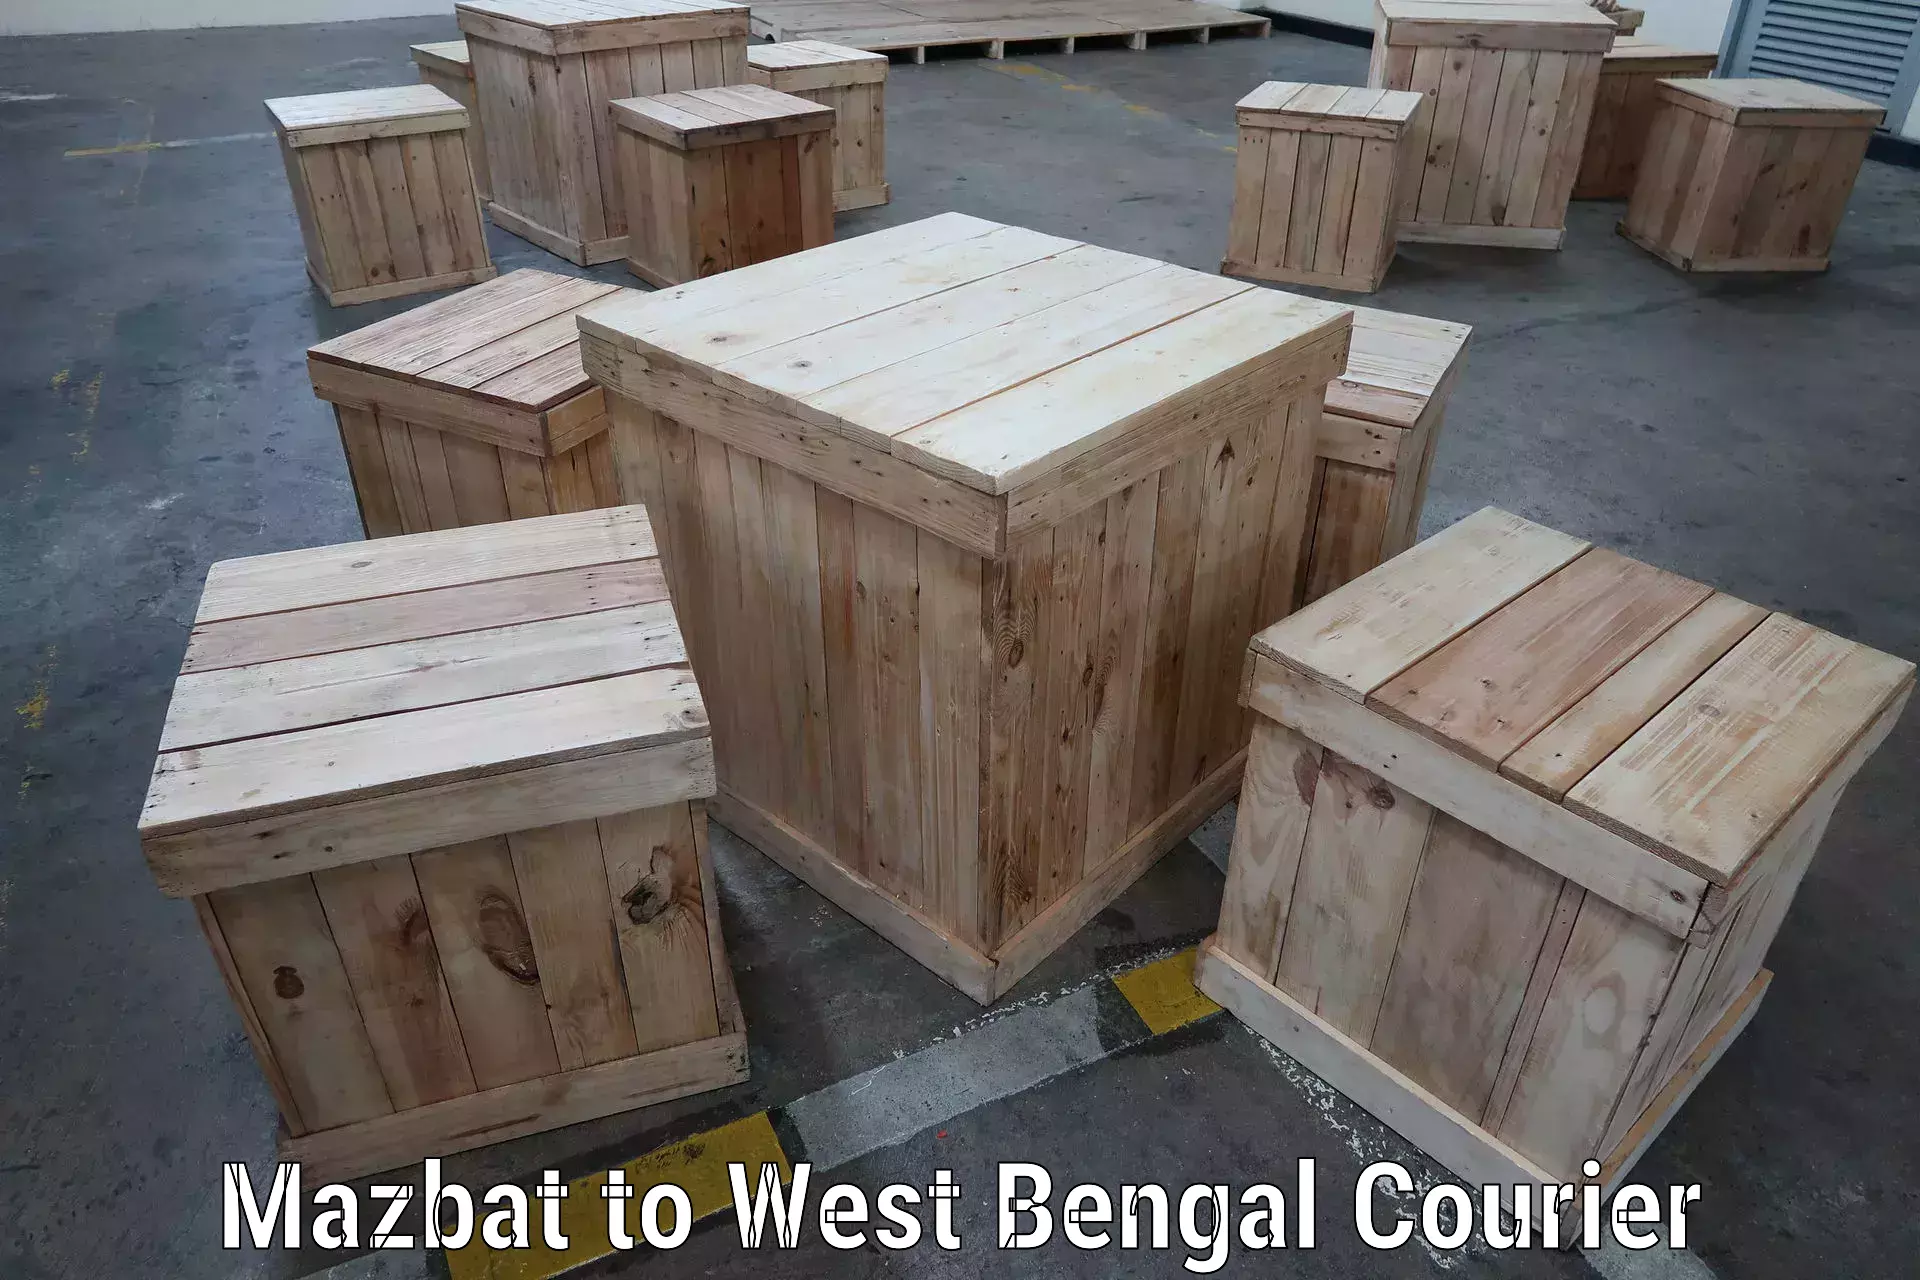 User-friendly courier app Mazbat to Bara Bazar